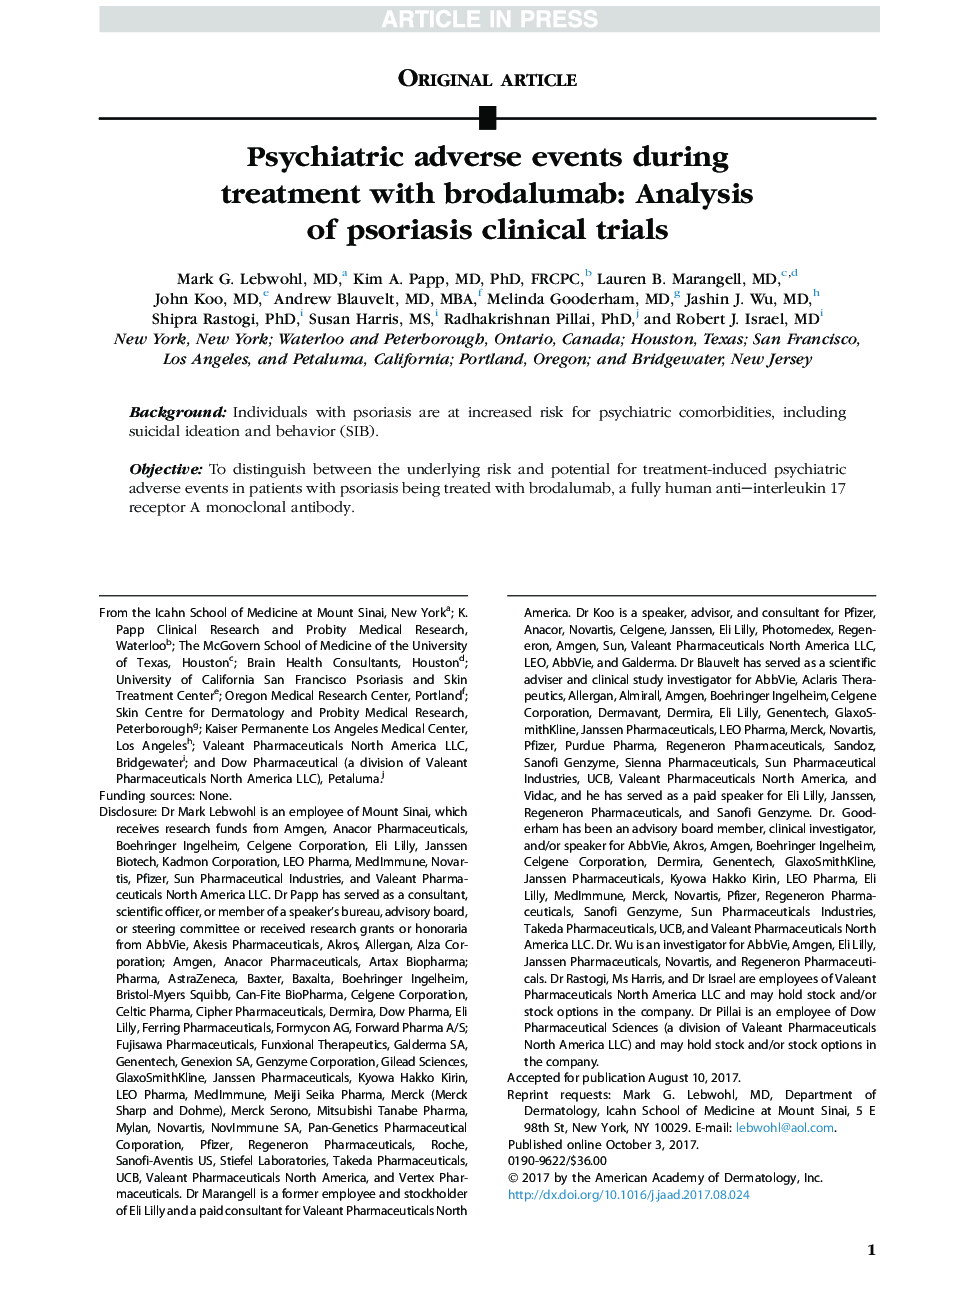 عوارض جانبی روانپزشکی در طول درمان با برودالومام: تجزیه و تحلیل آزمایشات بالینی پسوریازیس 